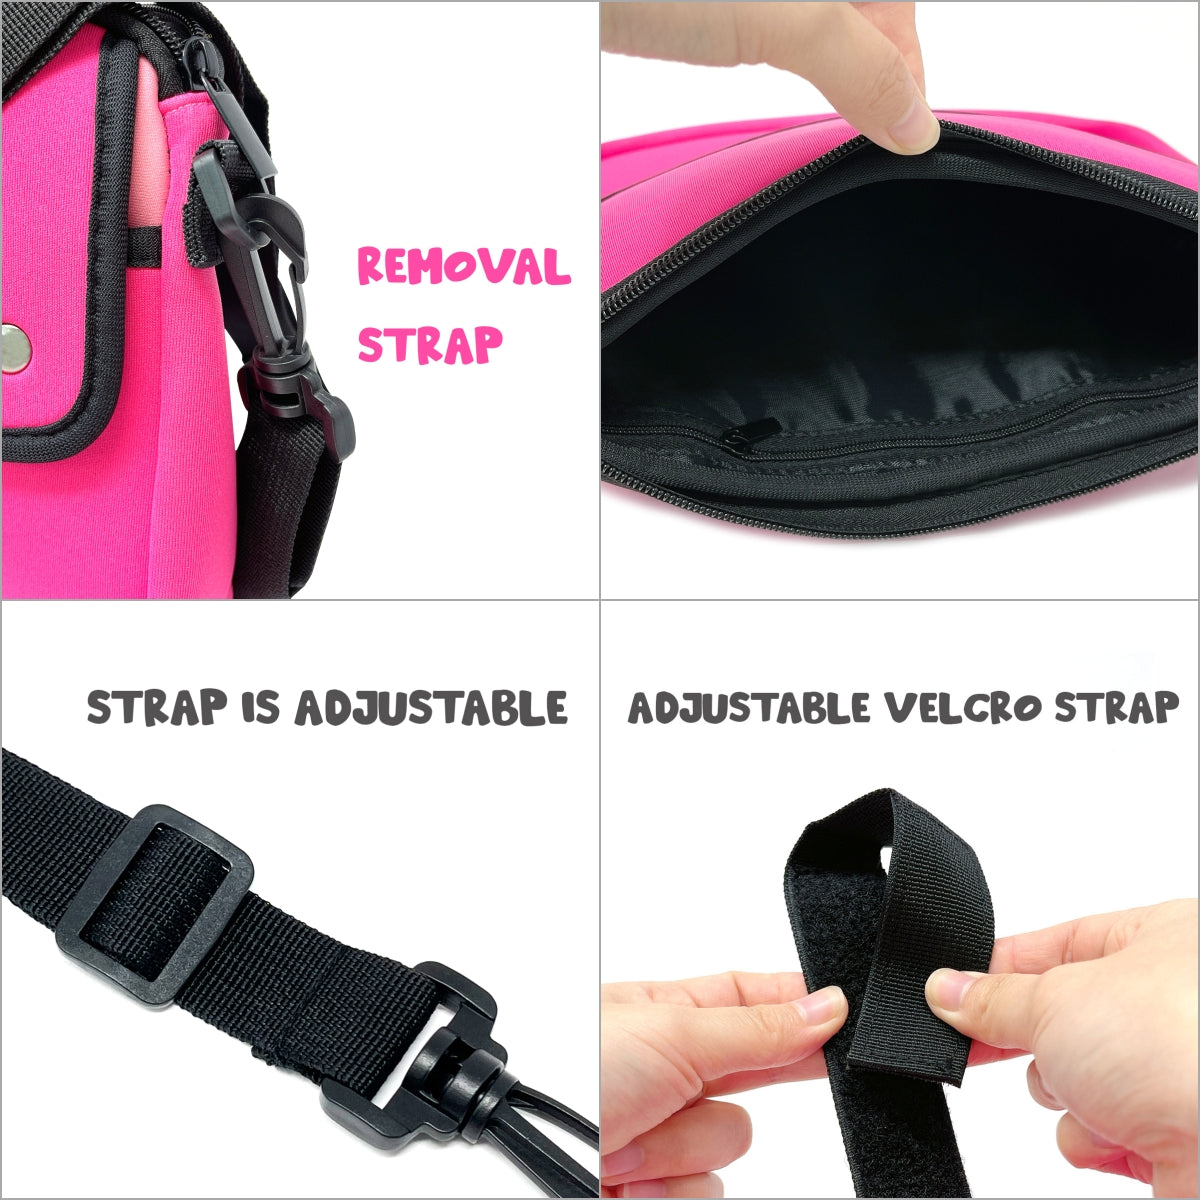 12 Best Velcro straps ideas  velcro straps, velcro, diy pouch no zipper